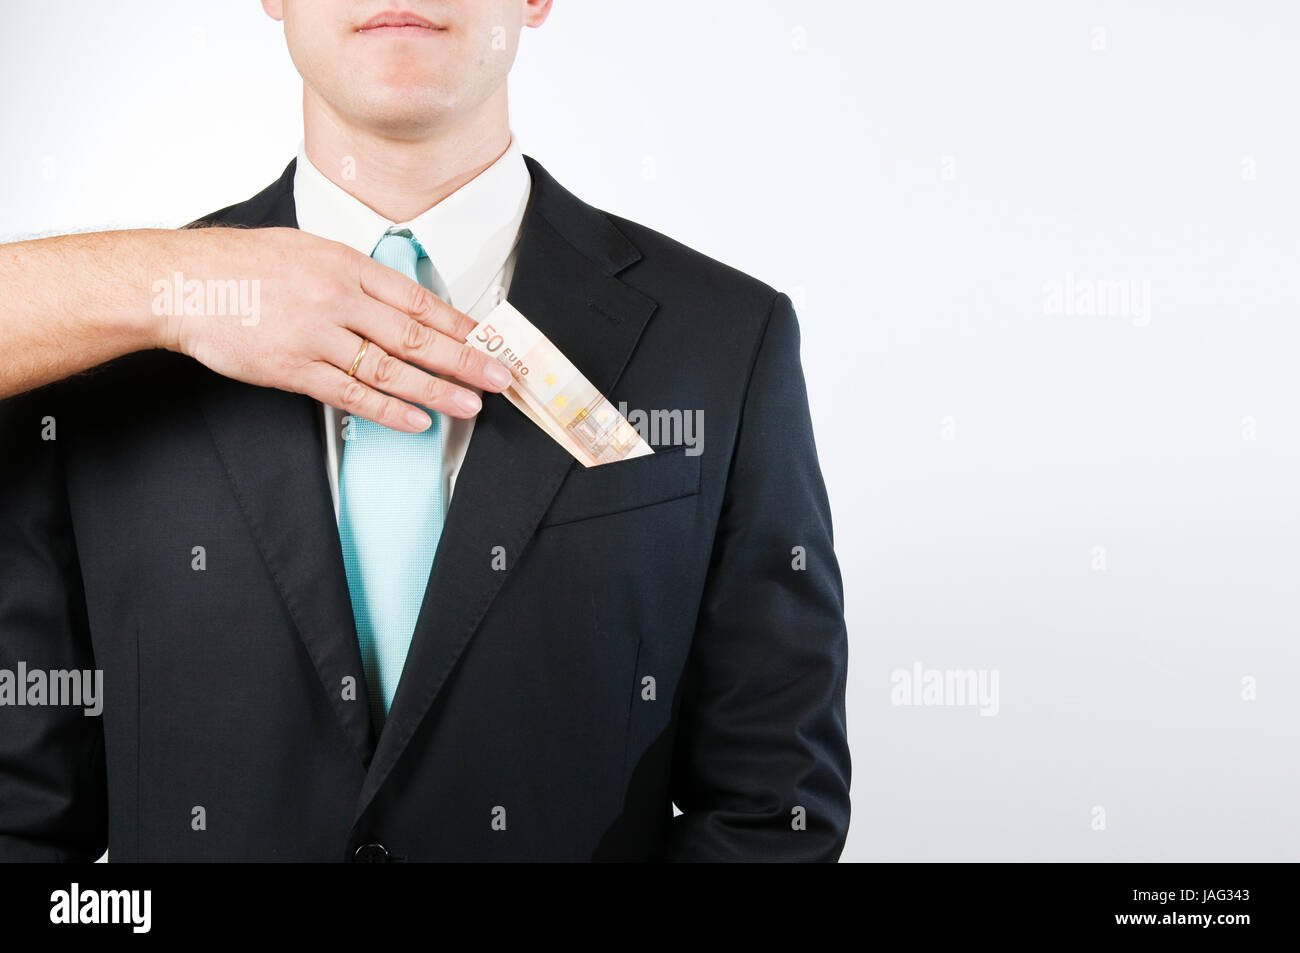 Oberkörper-Ansicht ohne Kopf eines jungen Mannes im schwarzen Anzug vor weißen Hintergrund; eine von links in das Bild hineinragende Hand steckt einen gefalteten Geldschein in die äußere Brusttasche Stock Photo